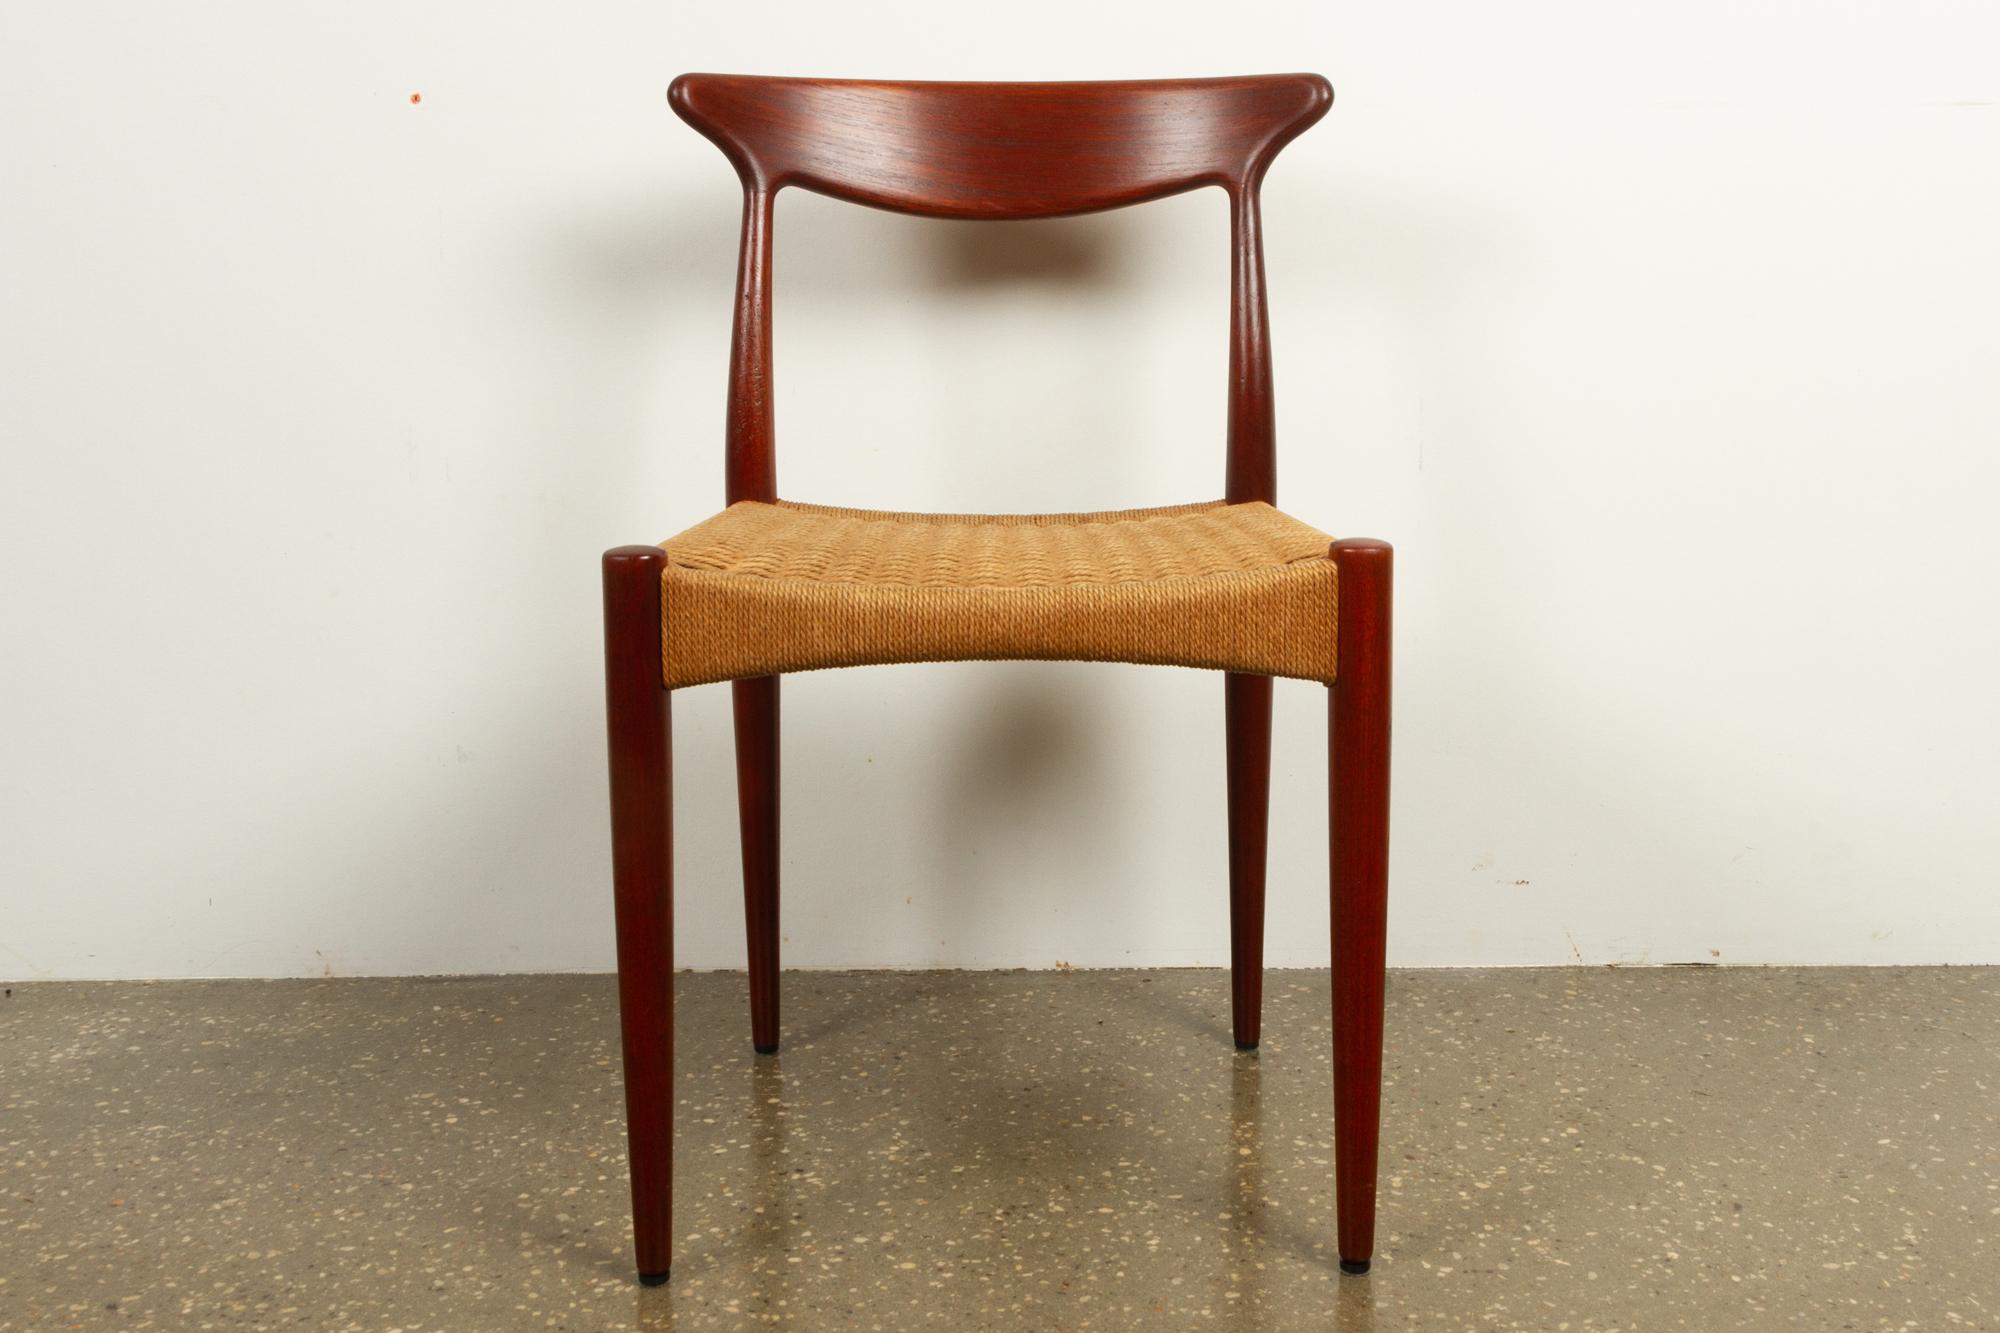 Mid-20th Century Vintage Danish Teak Chair by Arne Hovmand-Olsen for Mogens Kold, 1950s